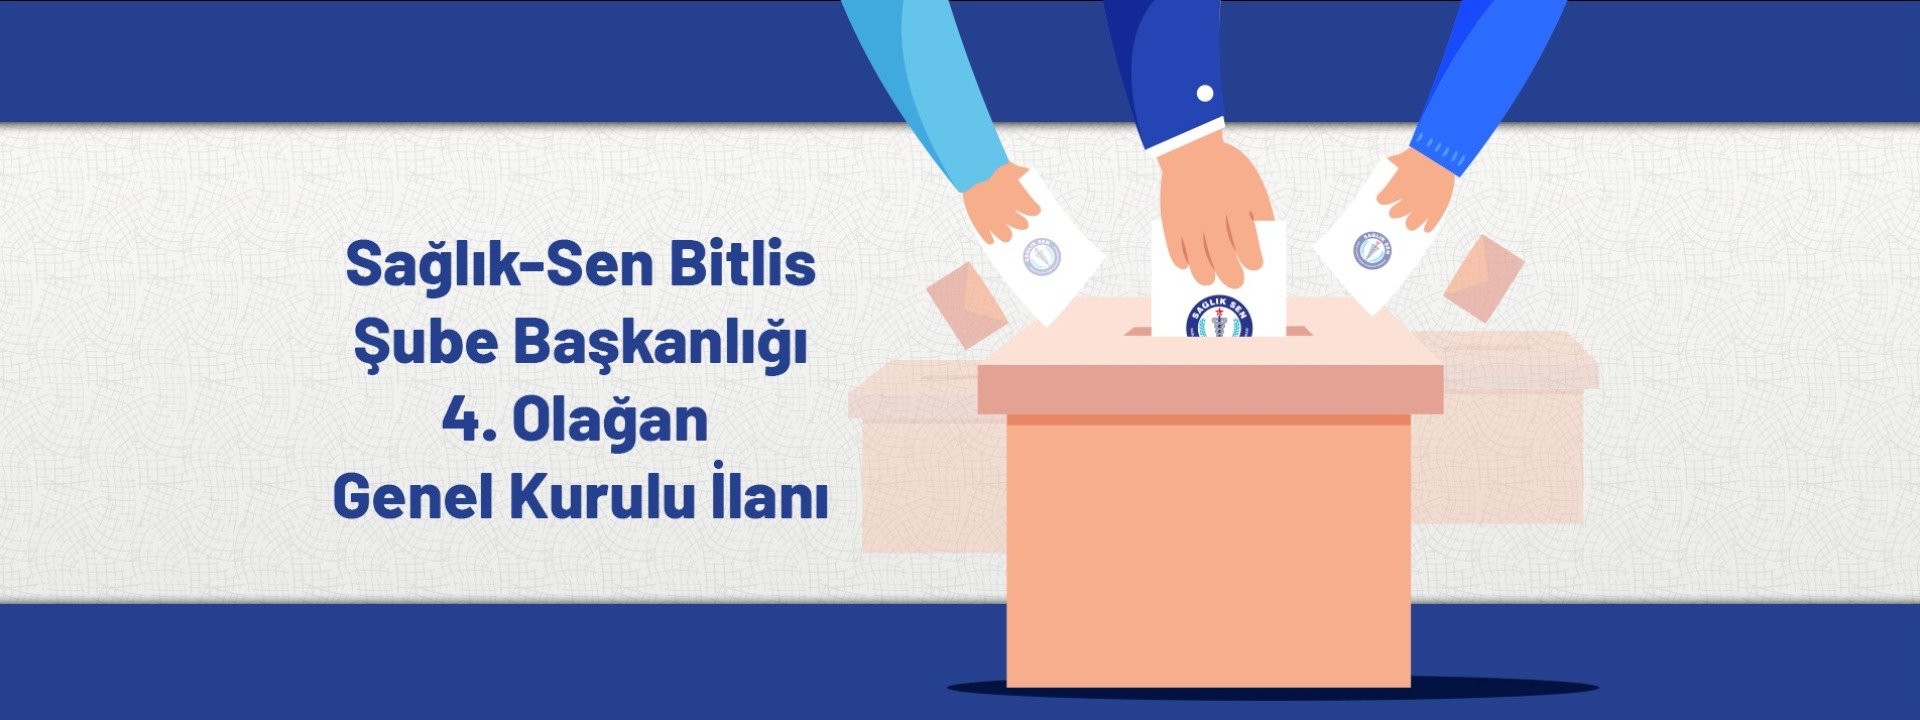 Sağlık-Sen Bitlis Şube Başkanlığı 4. Olağan Genel Kurul İlanı